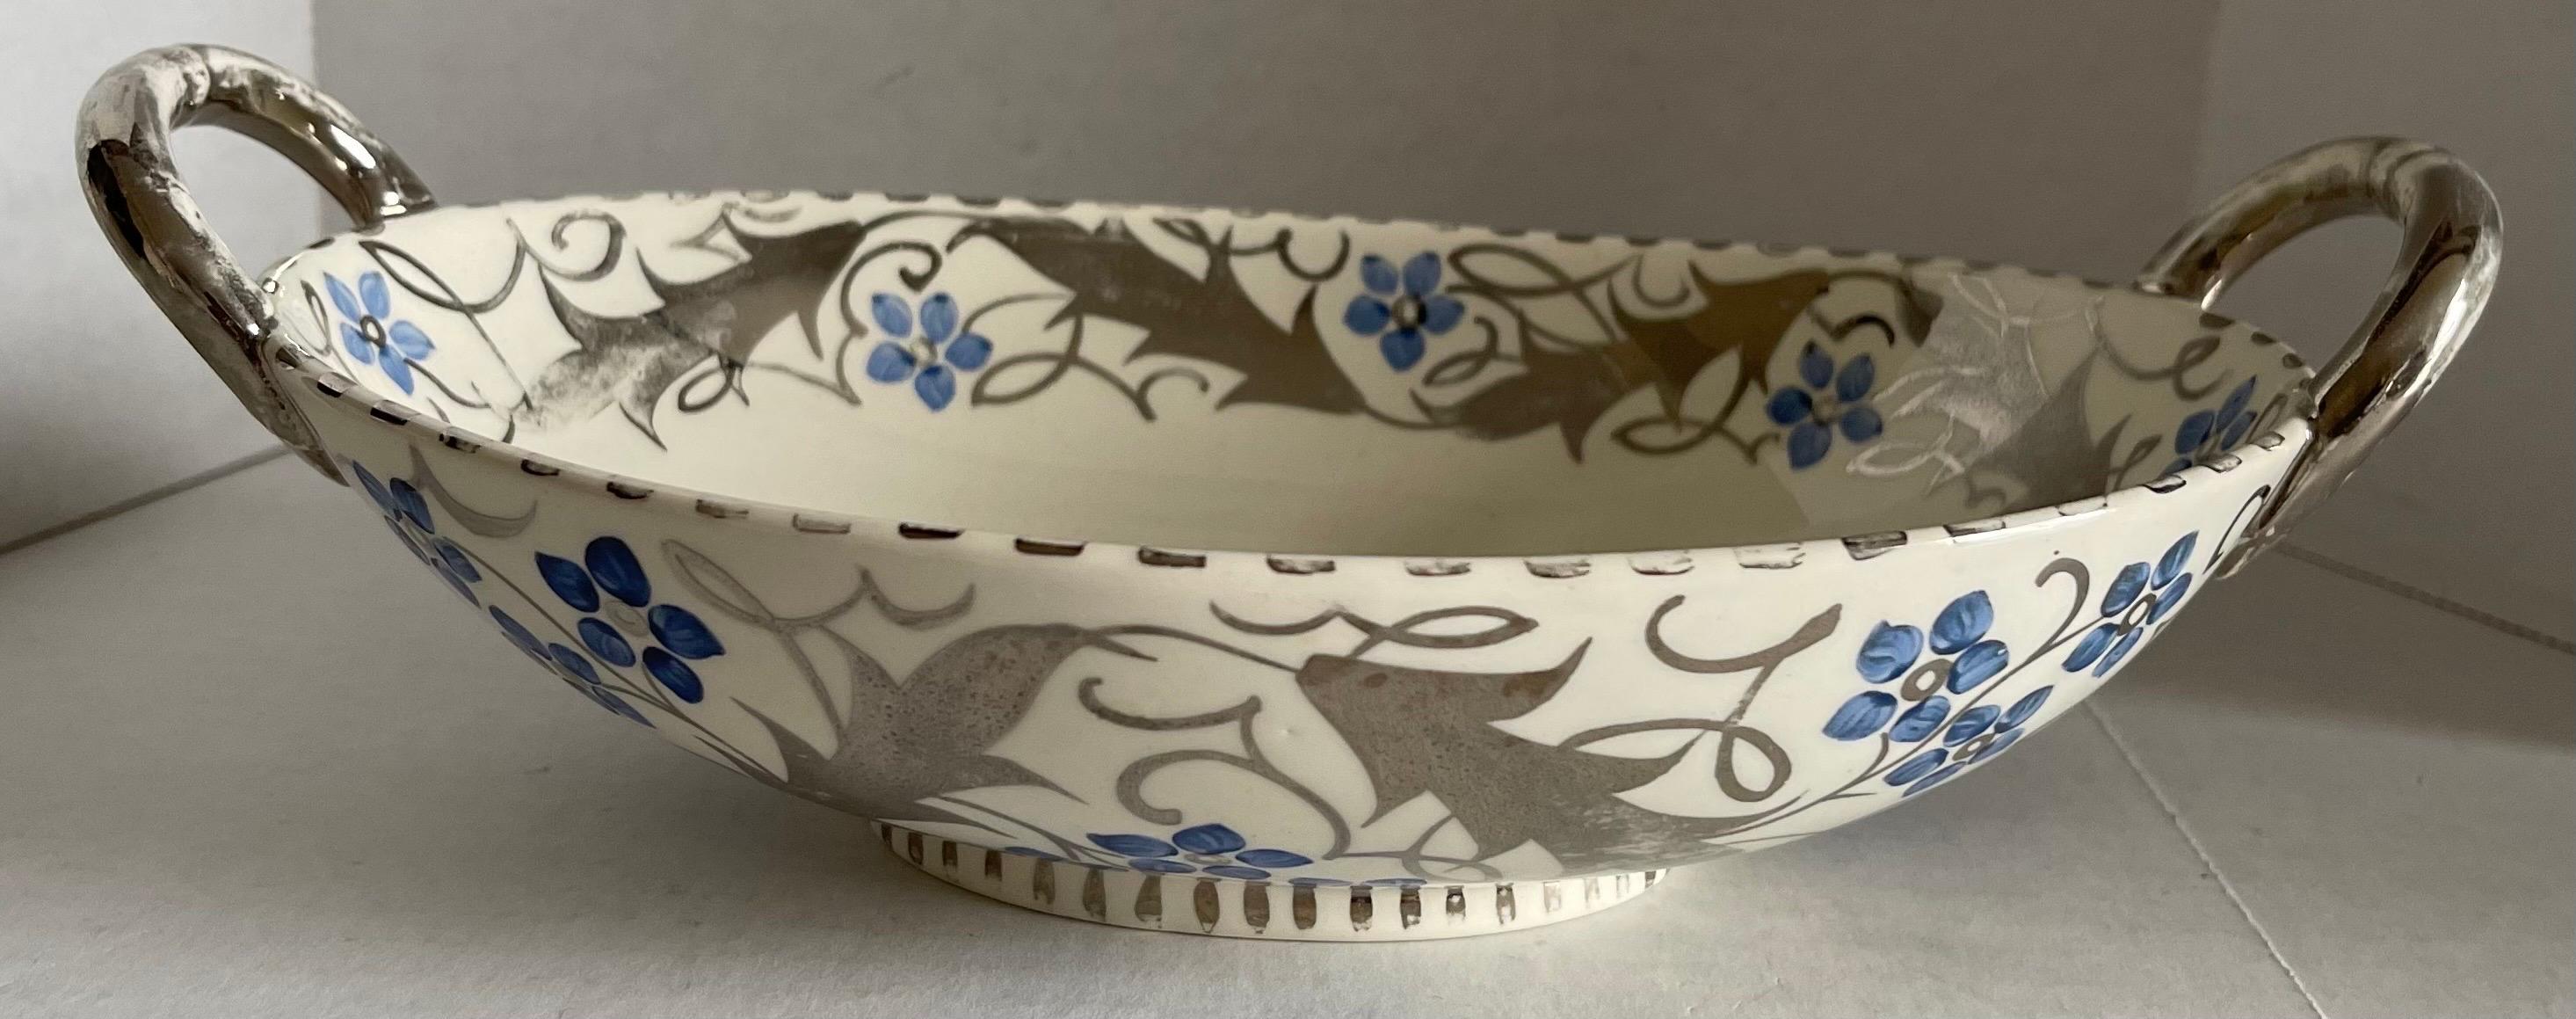 Antiker Wedgwood-Lüsterwaren-Korb aus den 1930er Jahren. Knochenporzellan mit handgemaltem silbernen und blauen Blumenmuster. Brandstempel auf der Unterseite. 